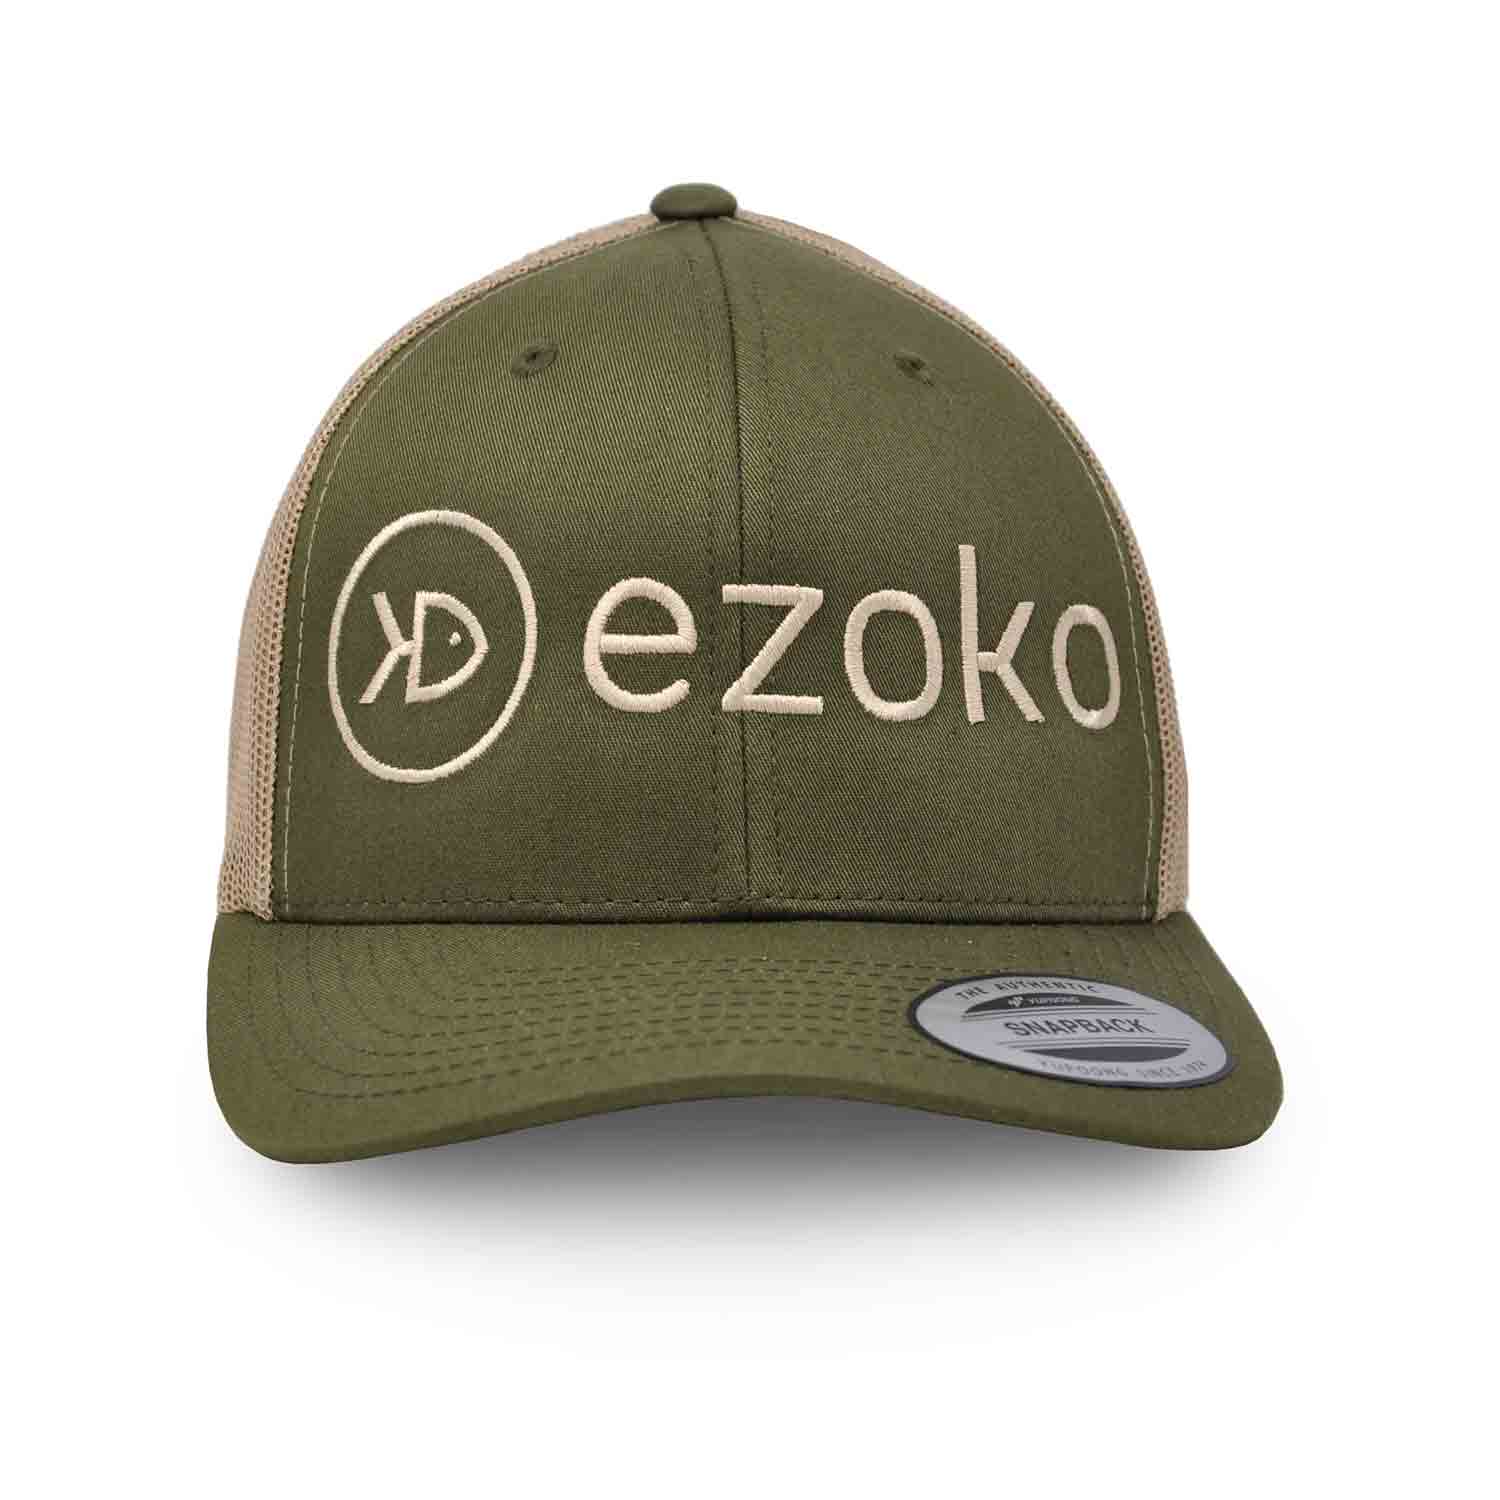 Ezoko Classics YUPOONG Retro Trucker Cap | fishing hat Charcoal / Black / 3D-Puff / Black